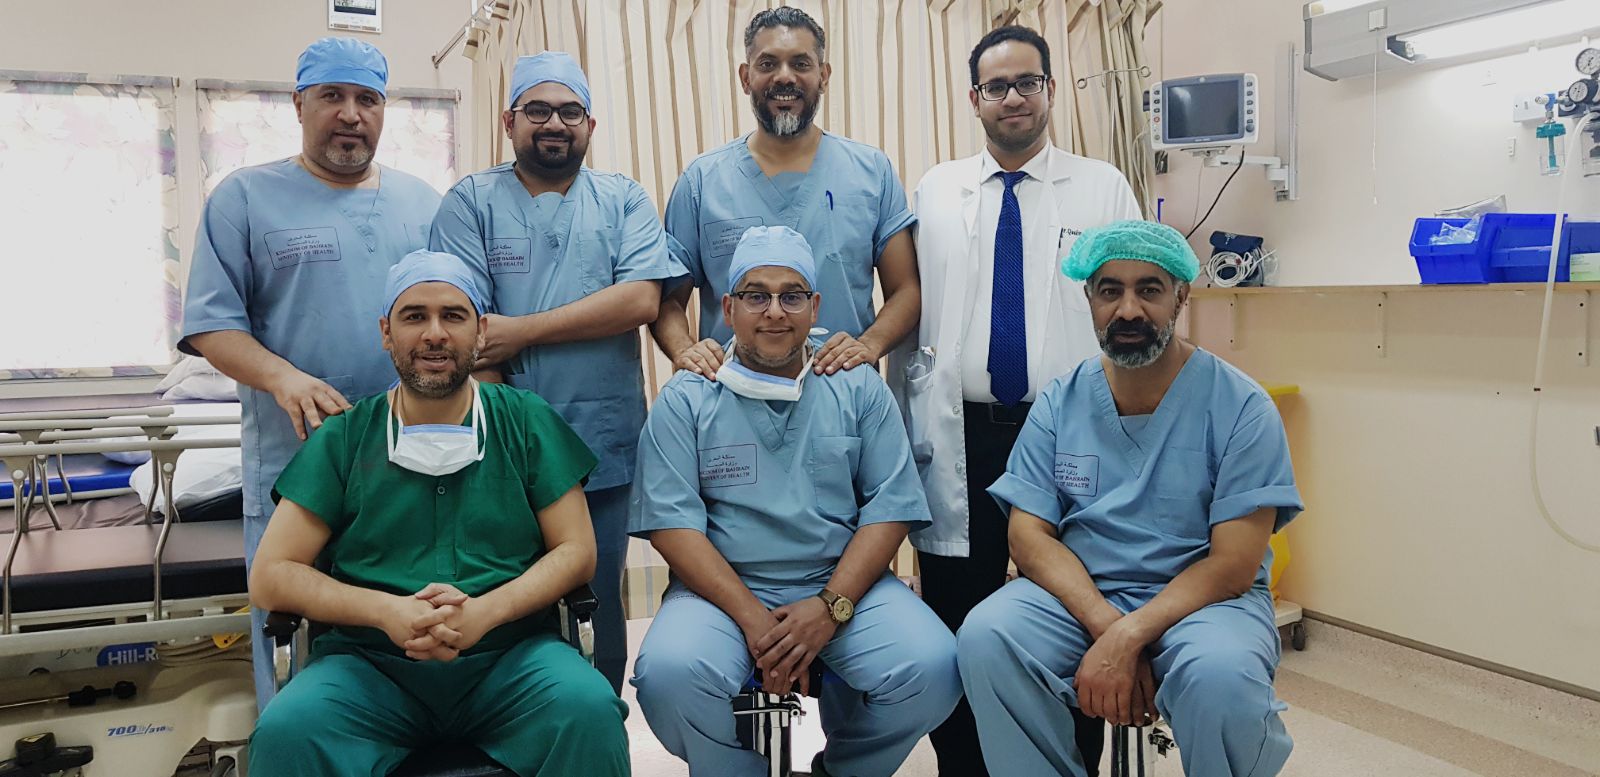 أجرى 6 عمليات جراحية وقدم محاضرة علمية للأطباء الجراحة بالسلمانية تستضيف الدكتور فيصل الهاجري